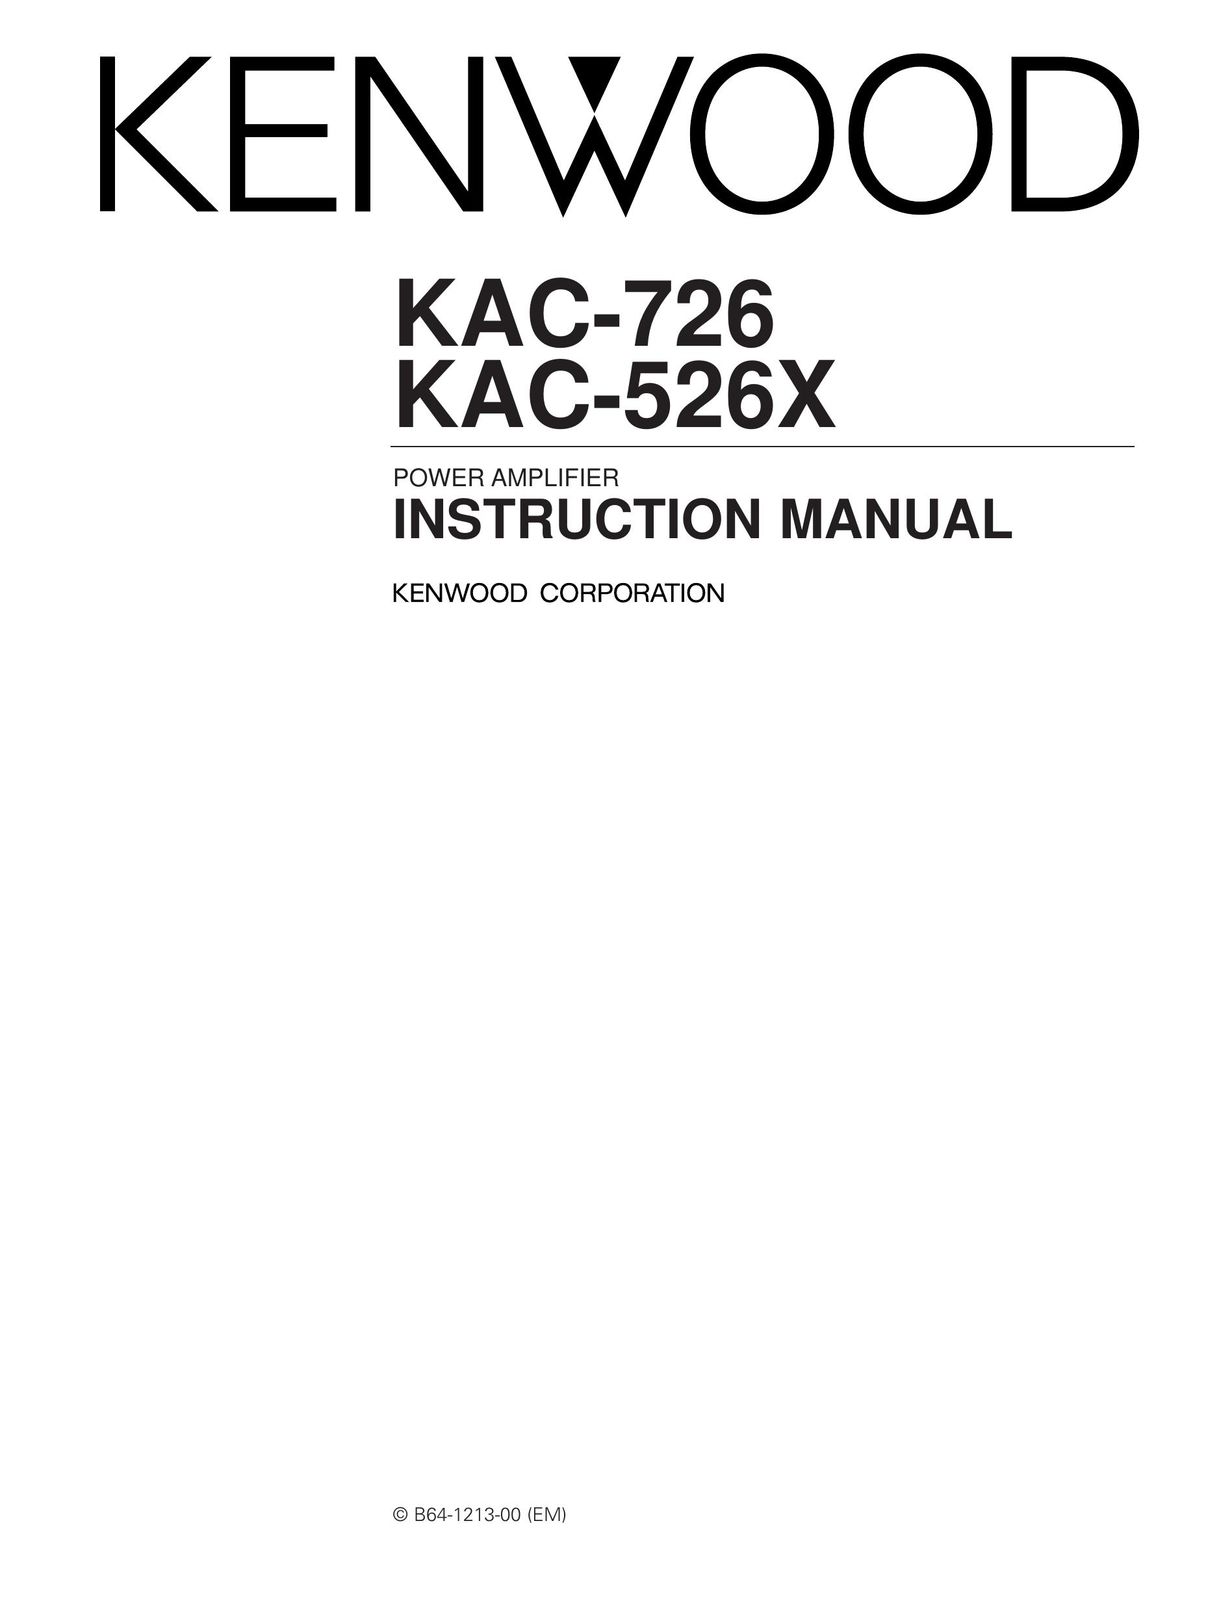 Kenwood KAC-726 Stereo Amplifier User Manual